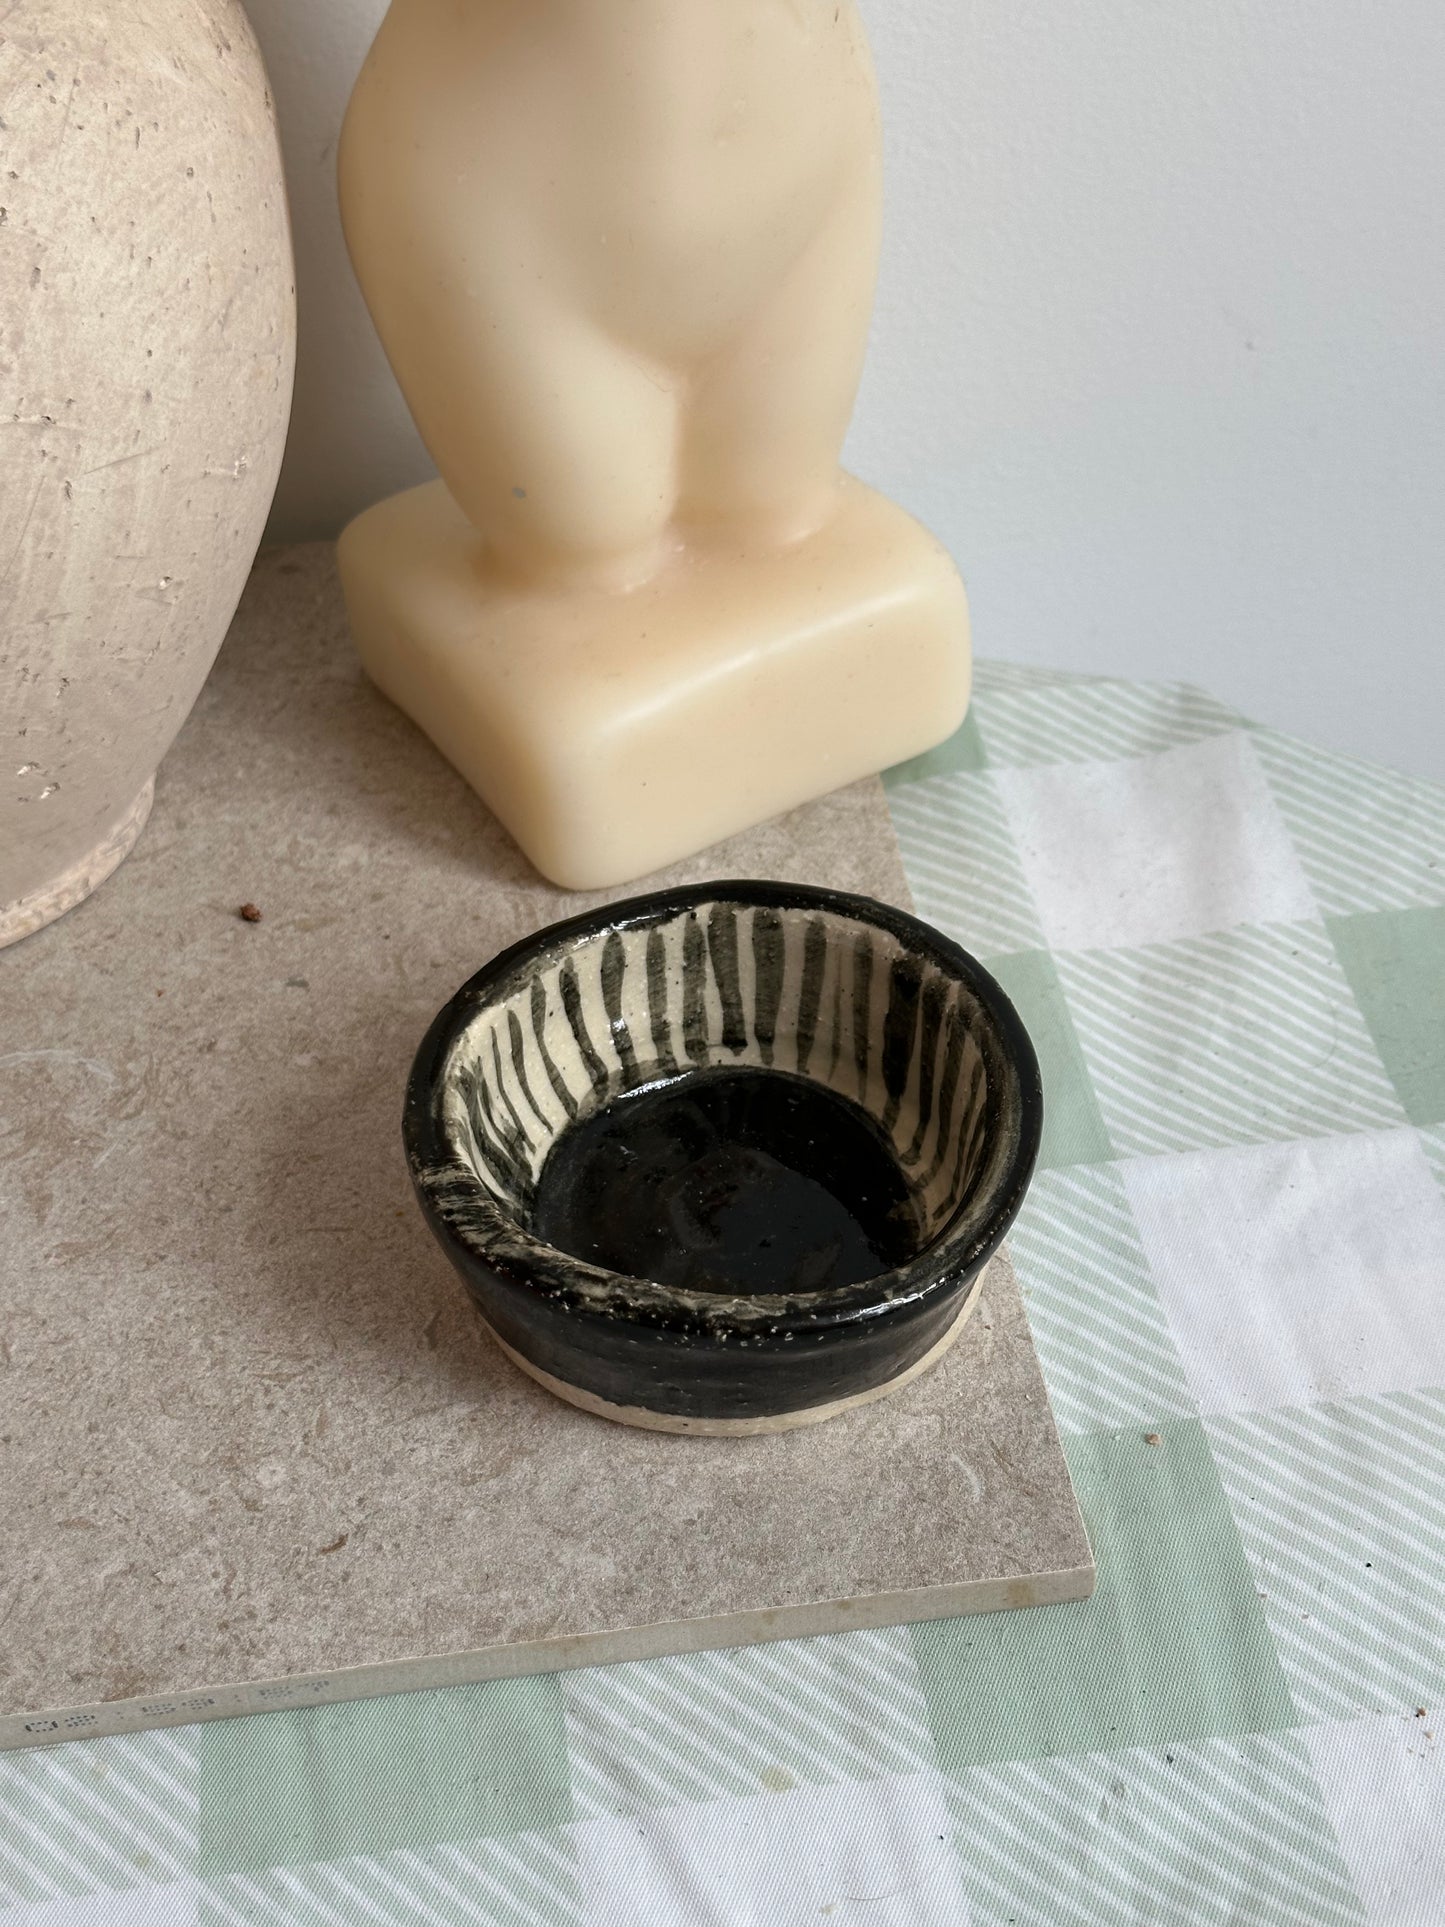 Ceramics: Olive Bowl | Food Safe